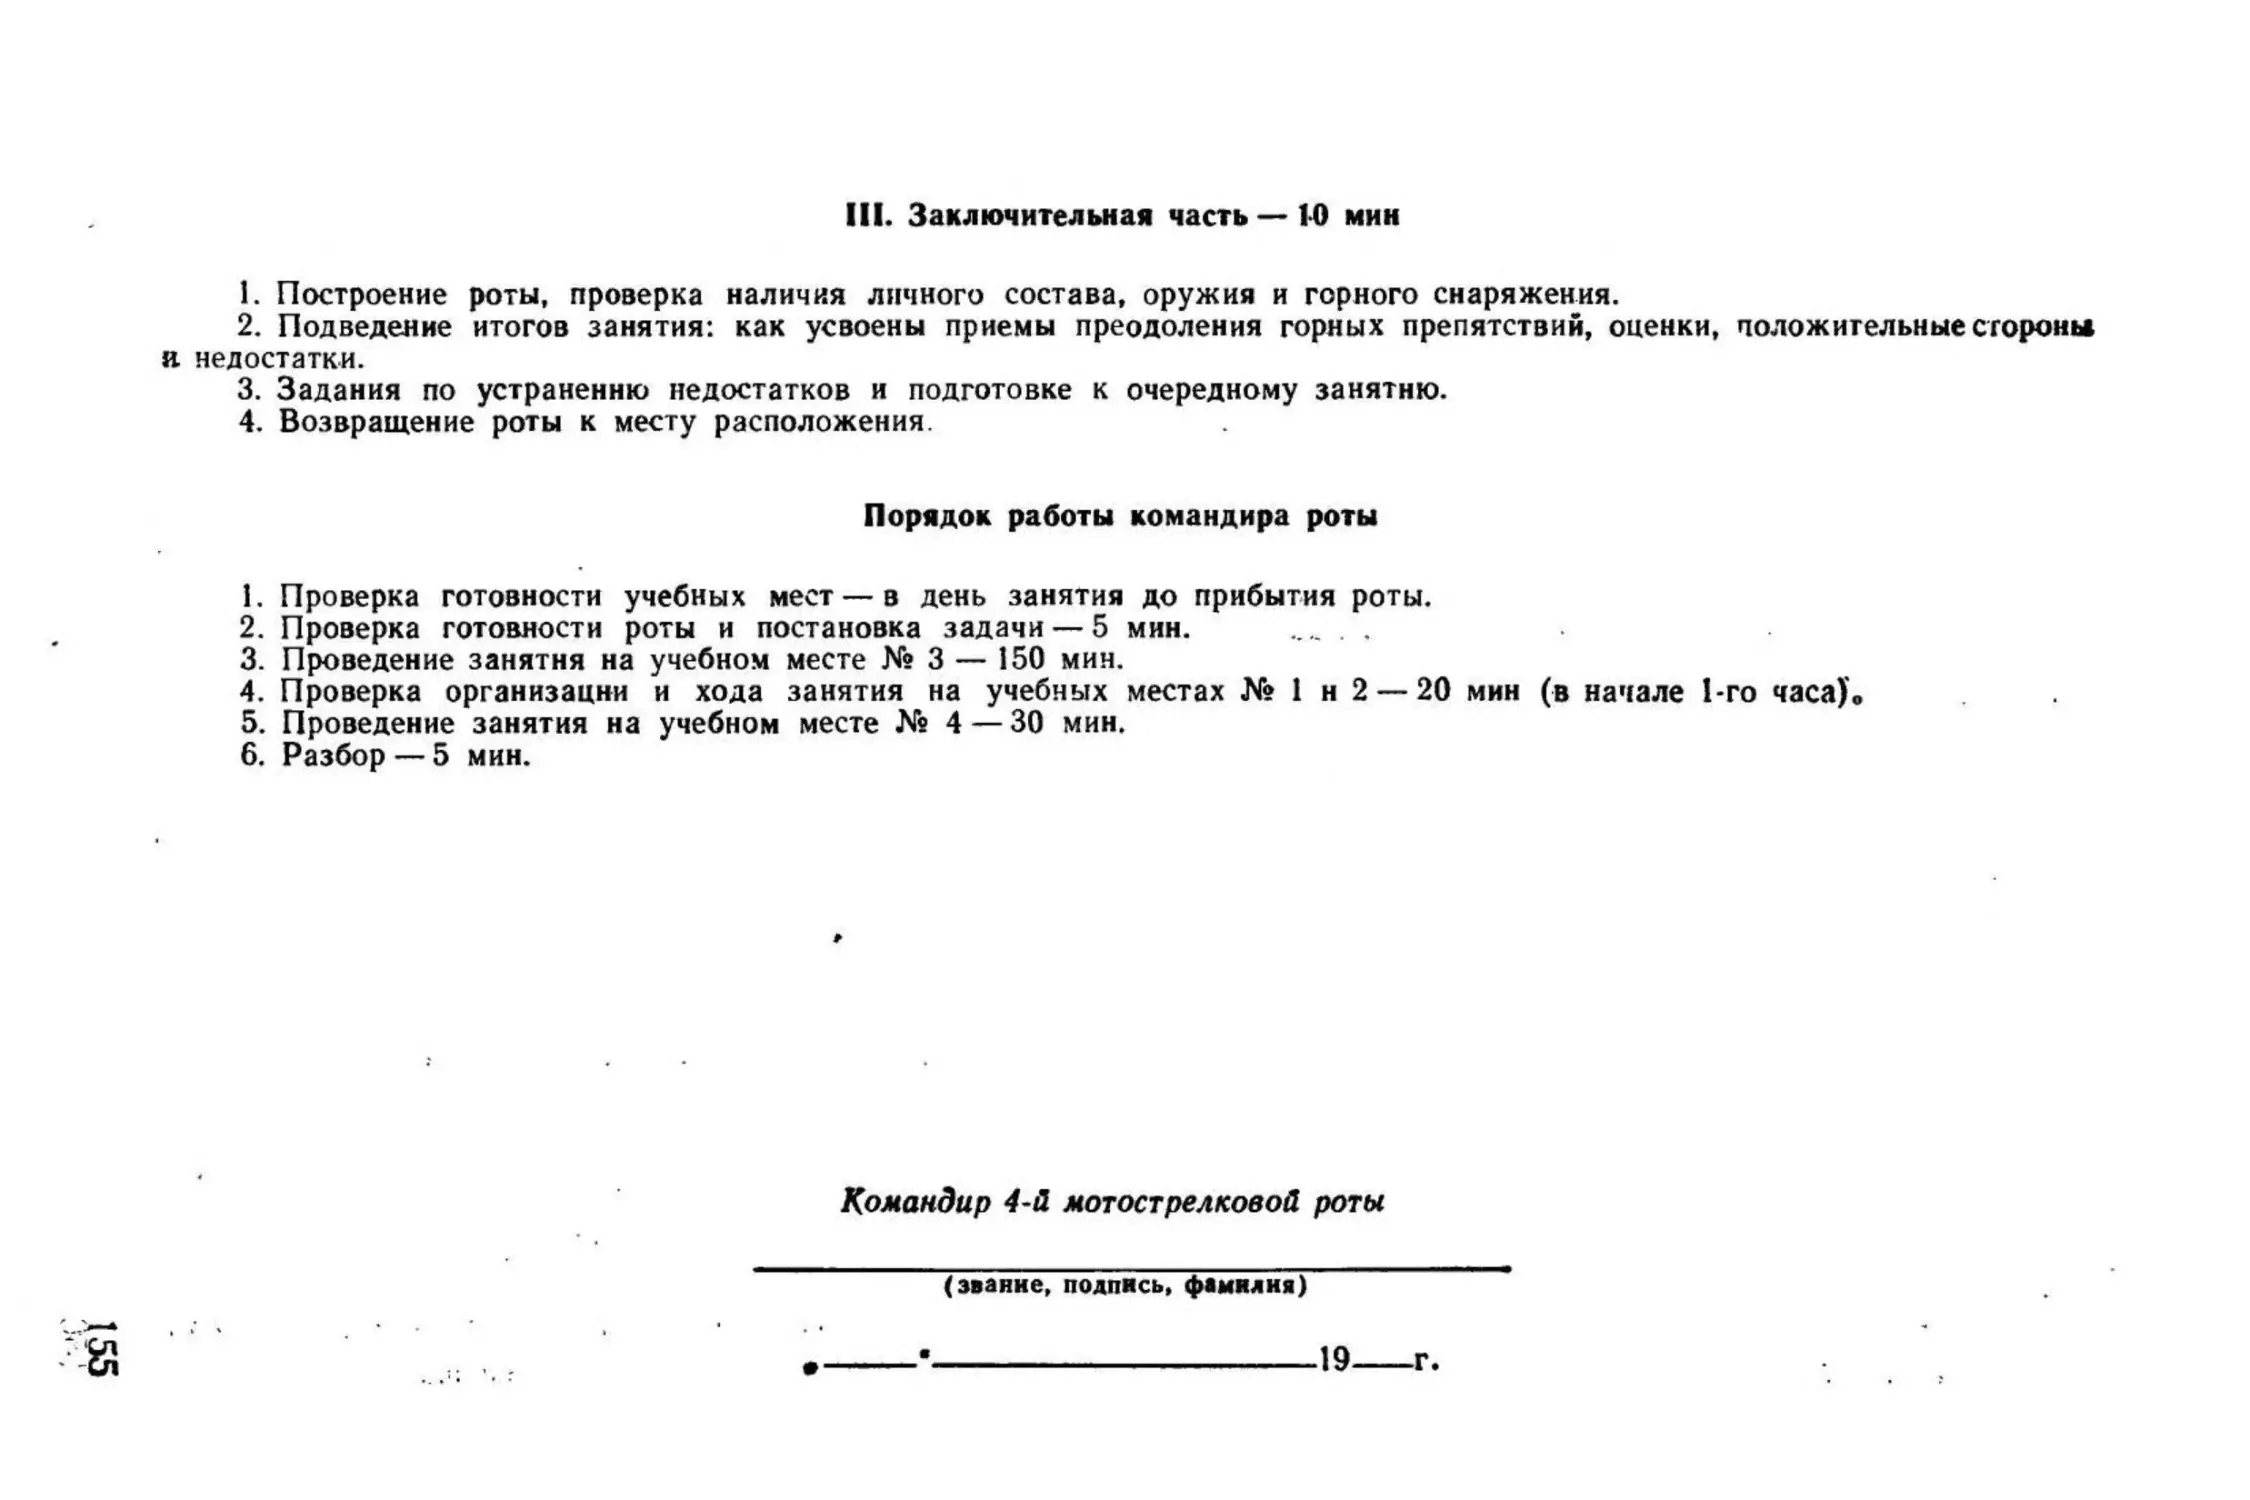 Методическое пособие Обучение мотострелковых подразделений боевым действиям в горах (1979)_156